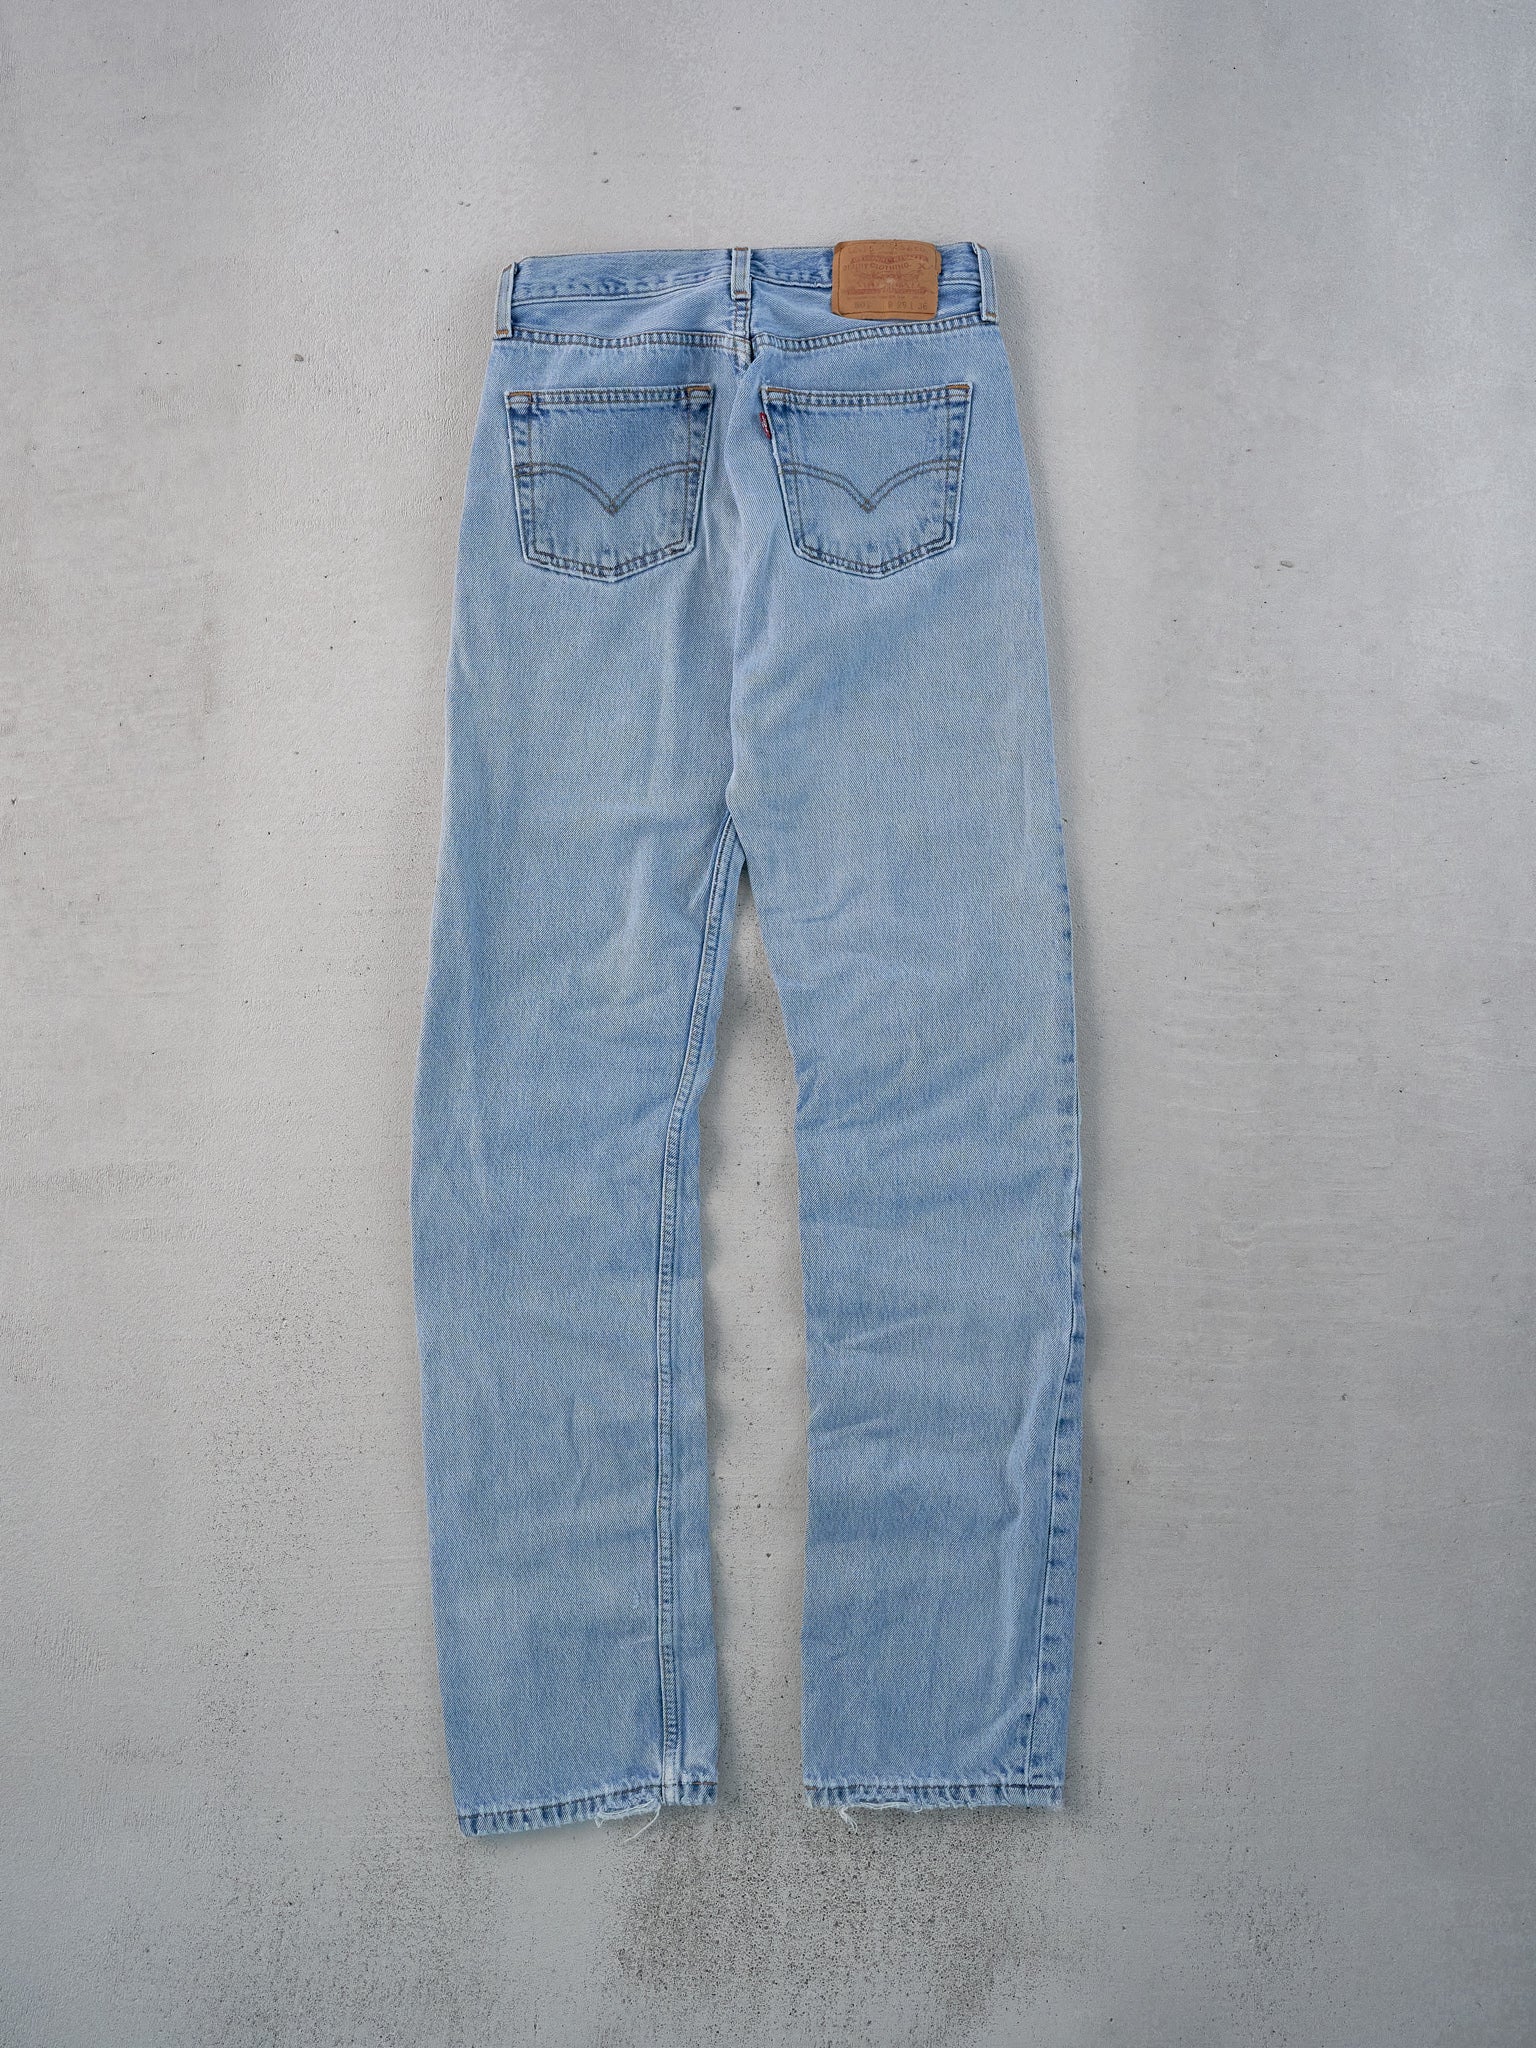 Vintage 90s Blue Levi's 501 Denim Jeans (27x34)